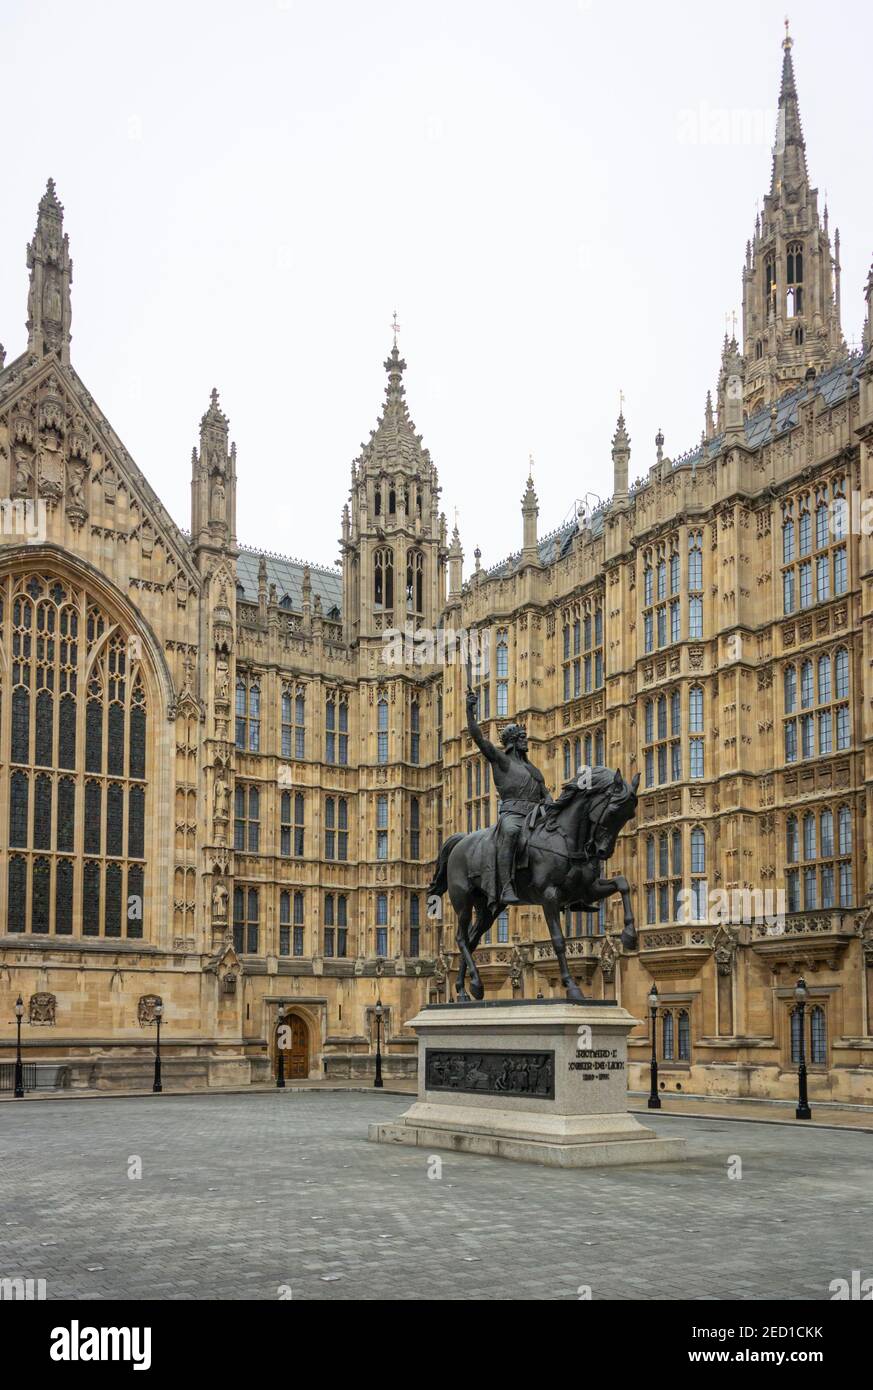 Richard Löwenherz, König von England - Statue vor dem Westminster Palace (Parlament) - London, Großbritannien Stockfoto